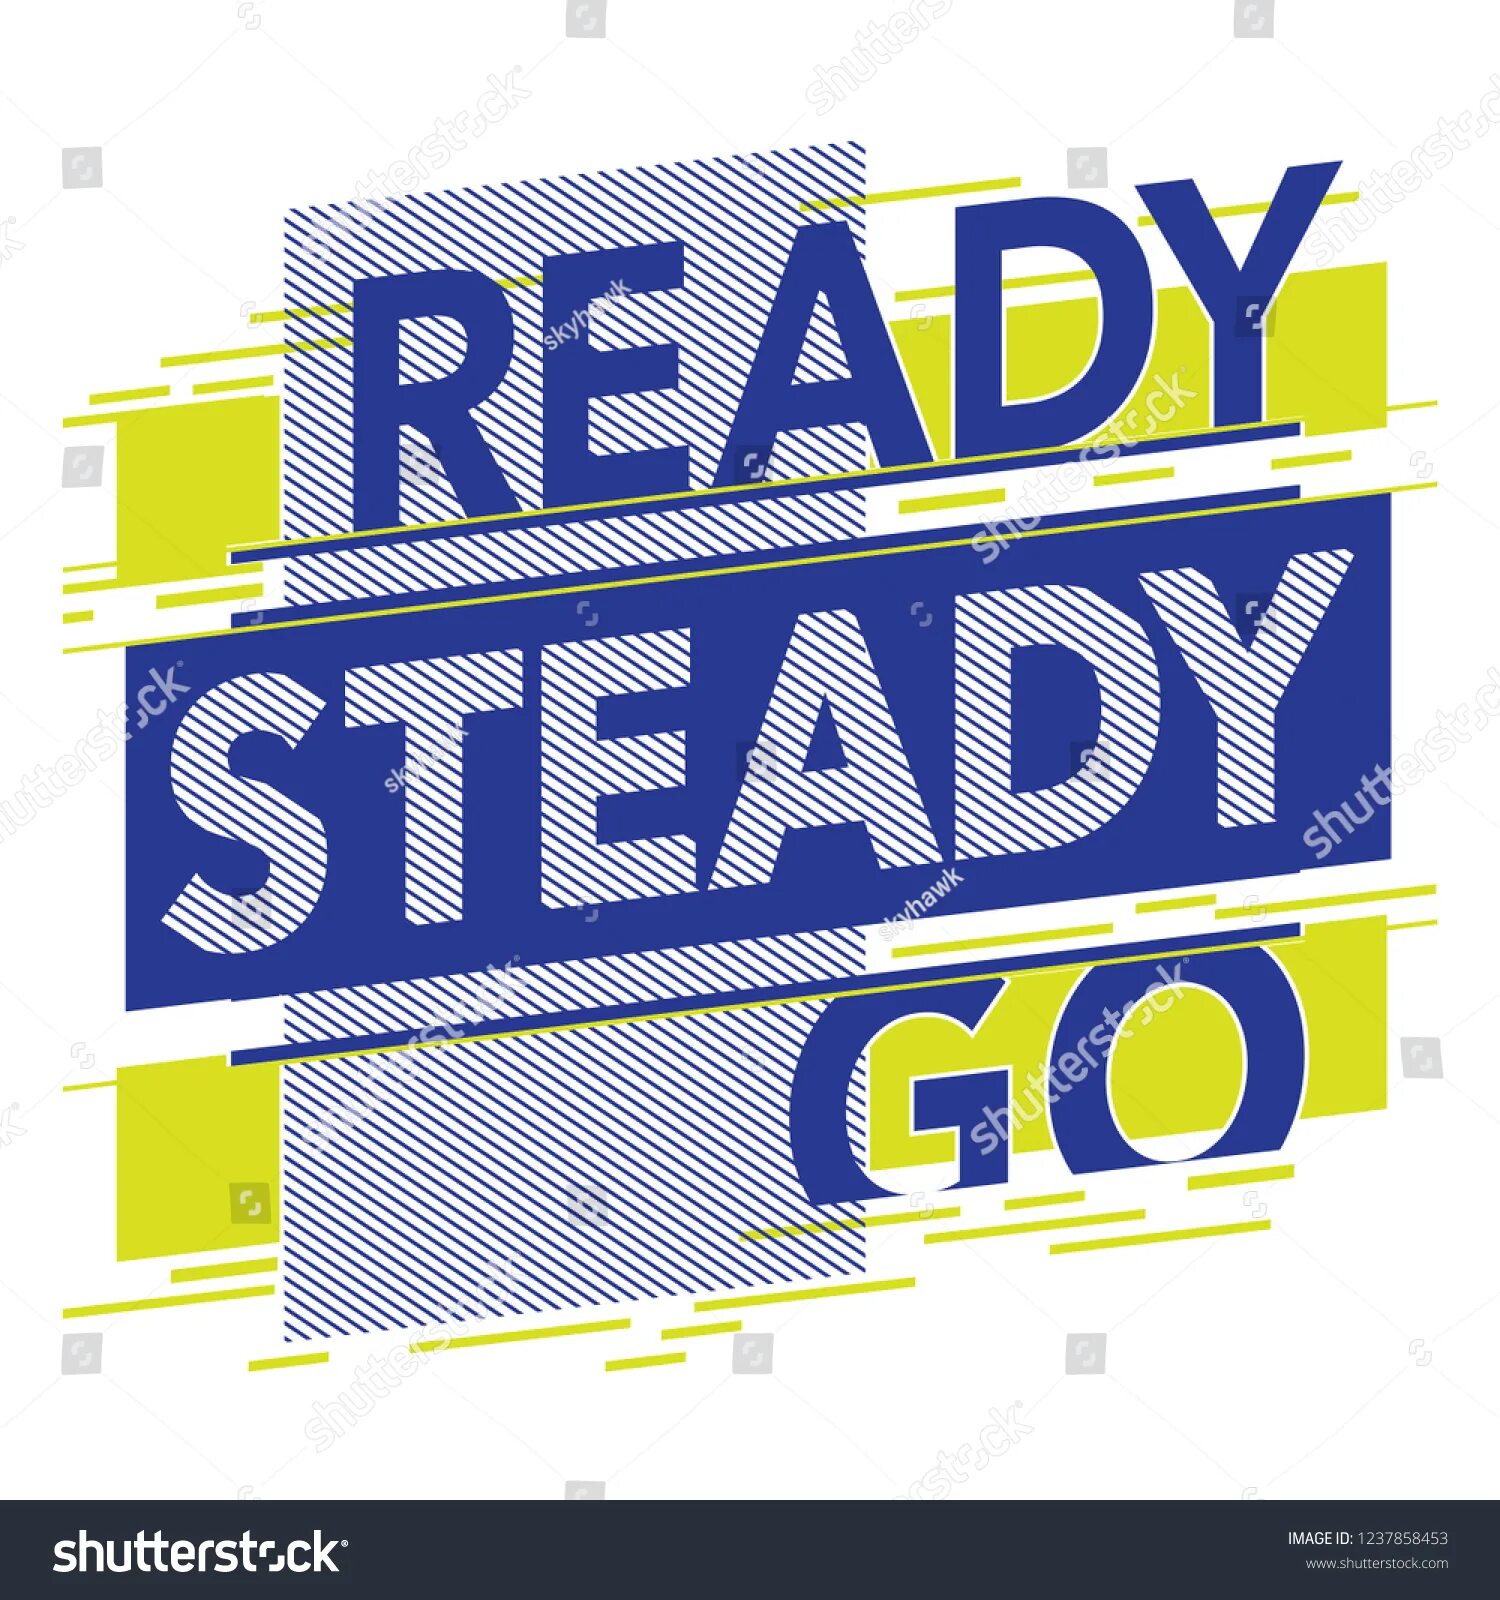 Ready steady go перевод на русский. Ready, steady, go!. Ready steady go картинки. Ready steady go game. Ready steady go одежда.